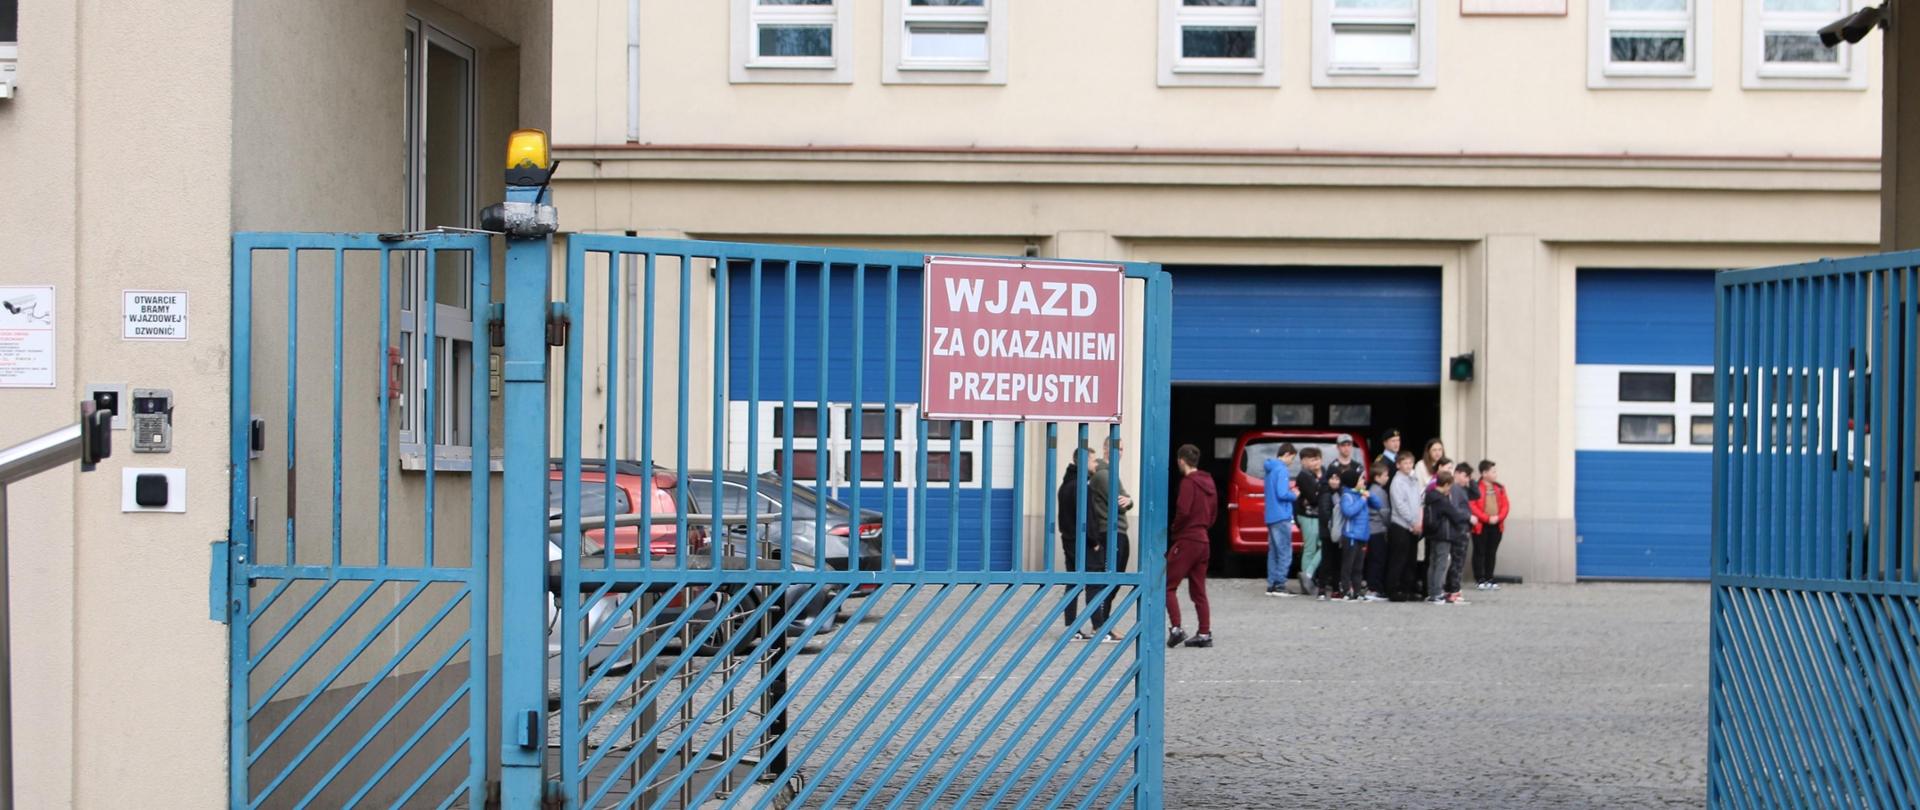 Niebieska brama wjazdowa na plac wewnętrzny SAPSP w Krakowie. Jedno skrzydło uchylone do połowy w tle grupa ludzi. 